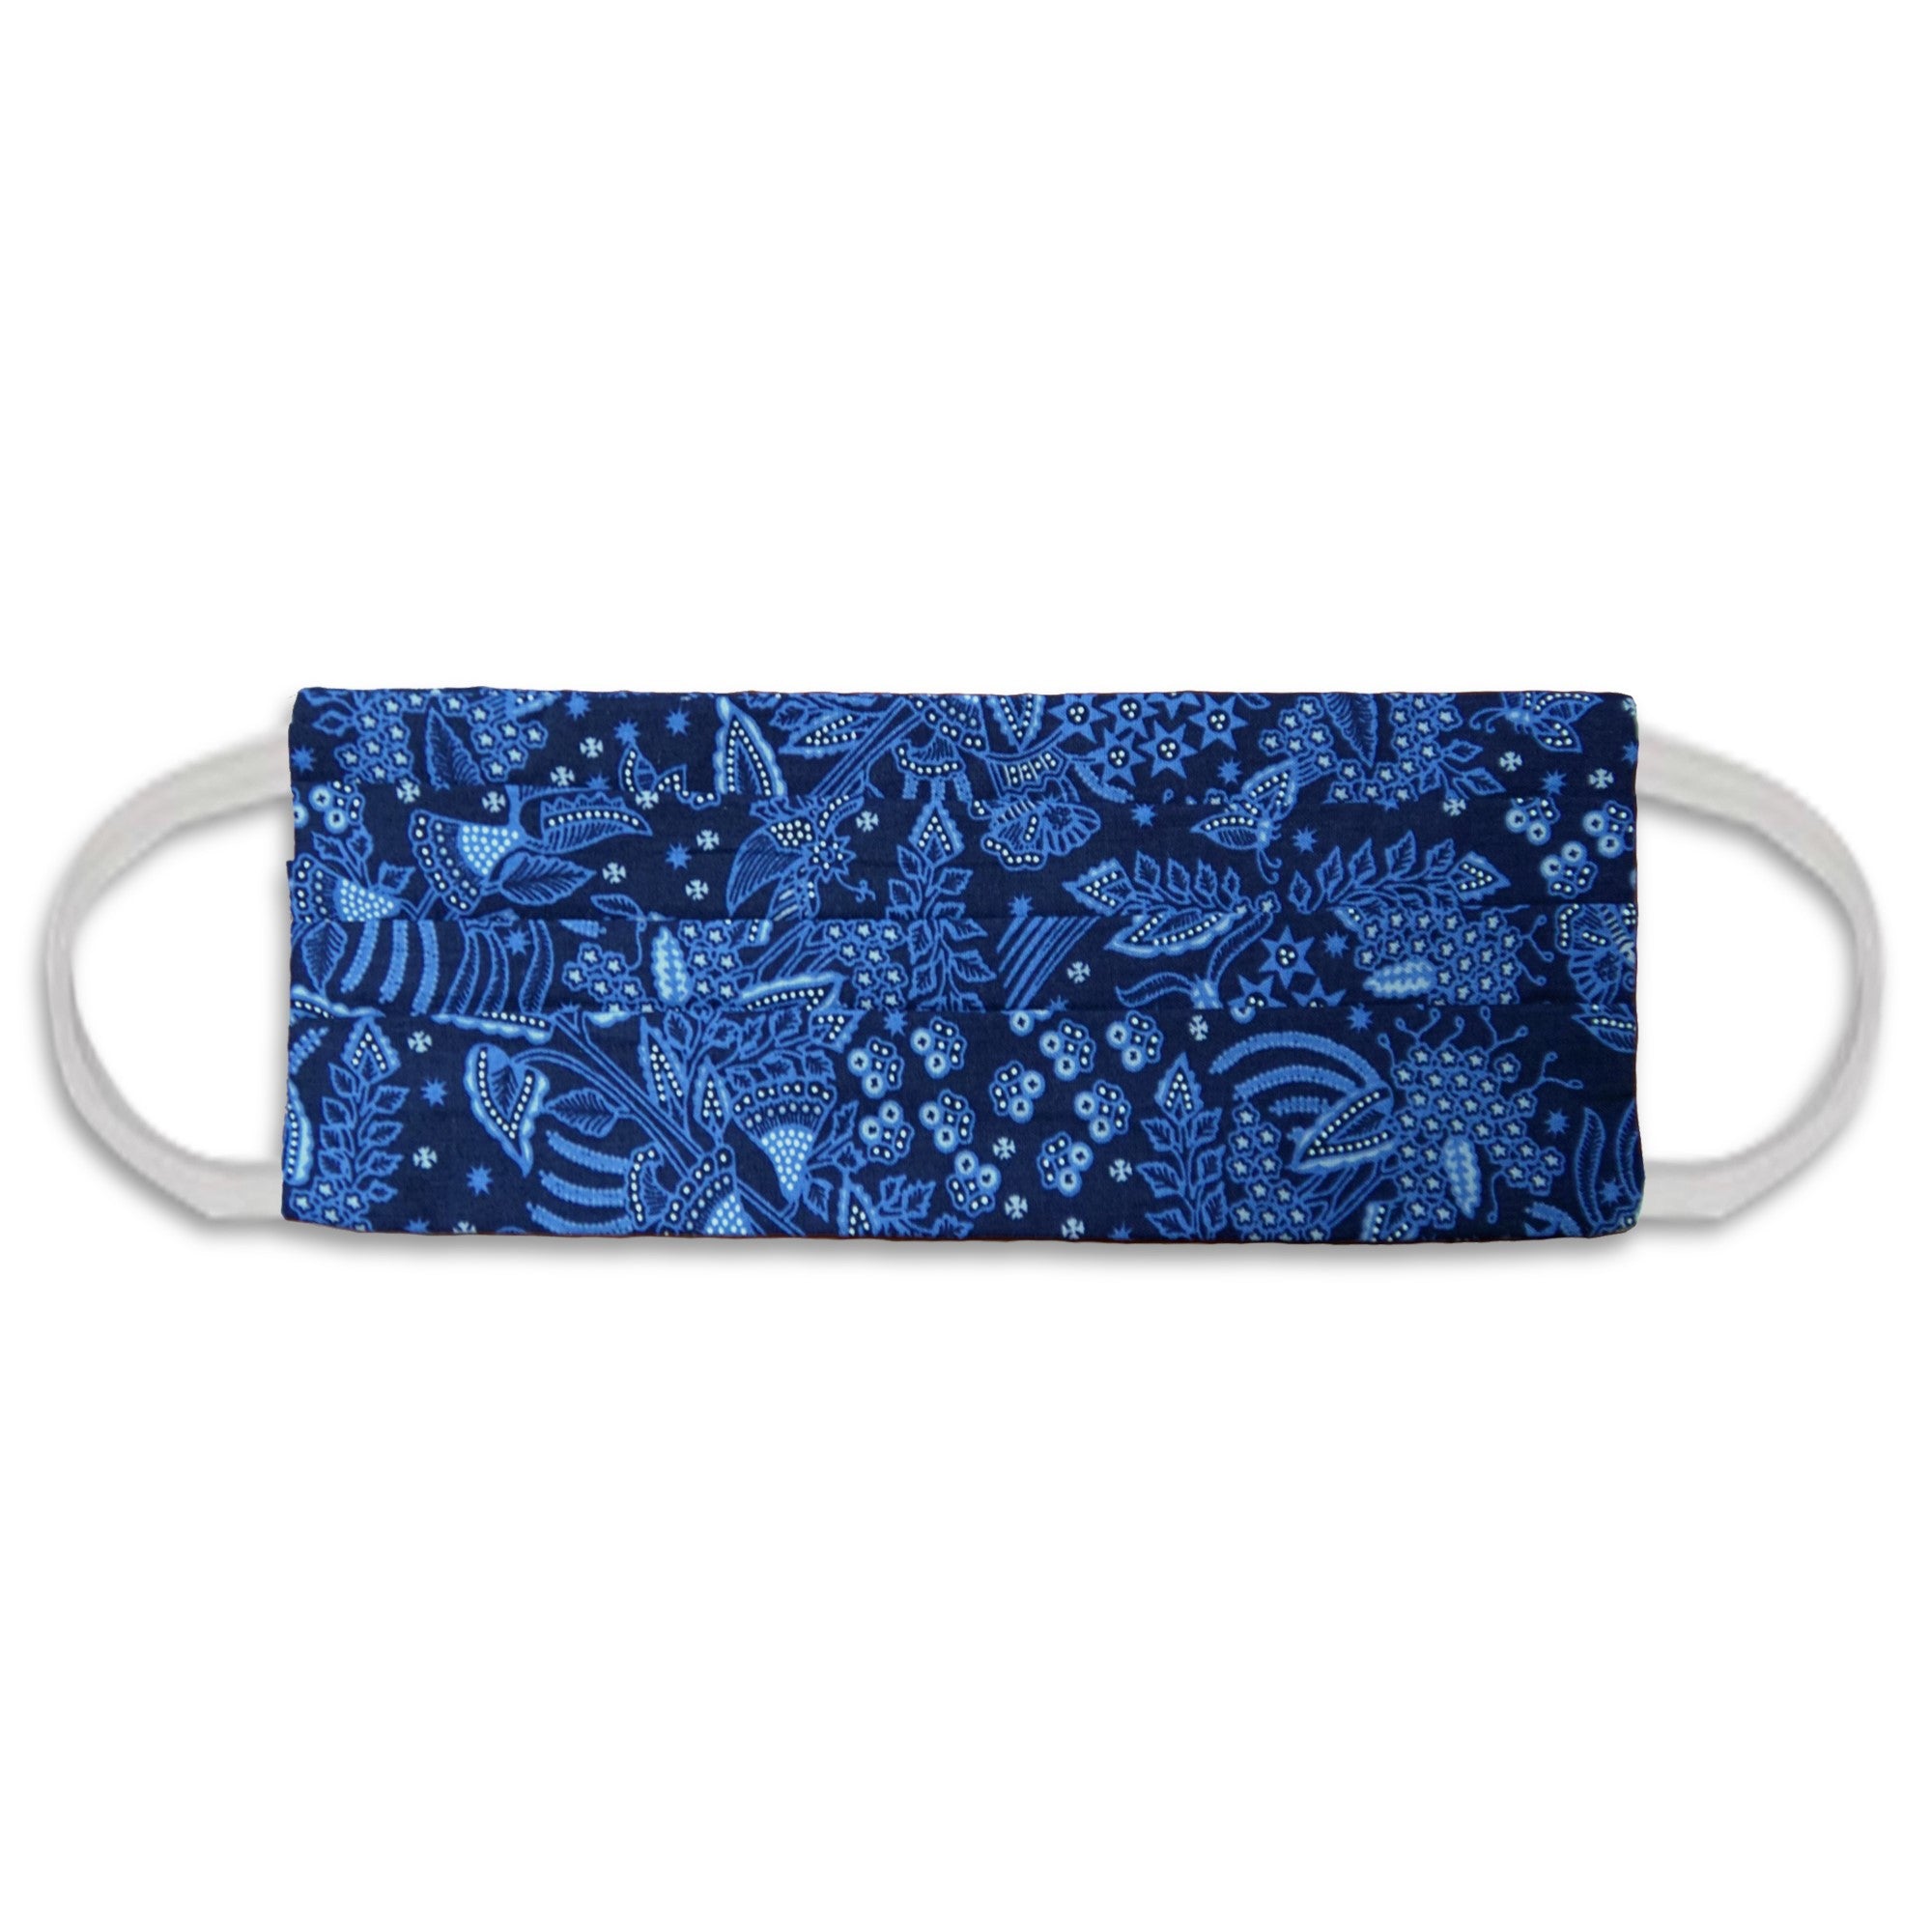 Rectangle Batik Face Mask with Insert Pocket - Blue